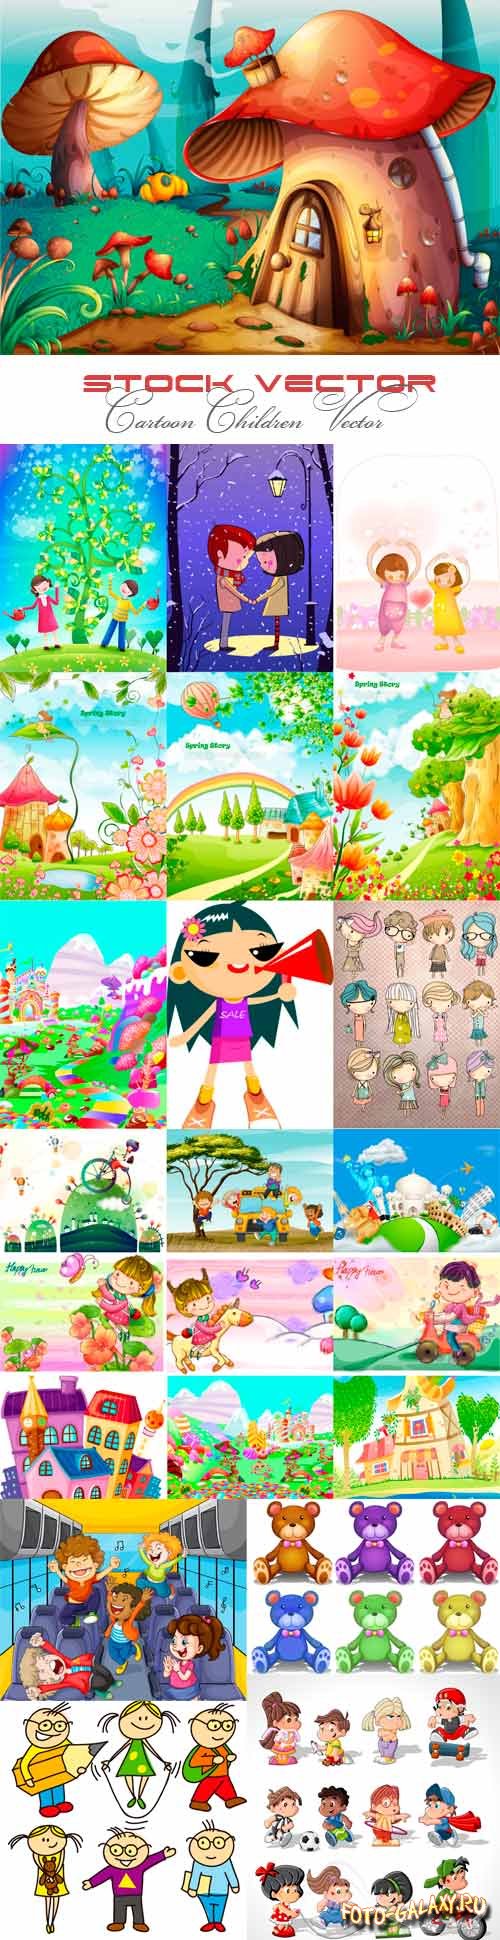 Cartoon children vector images